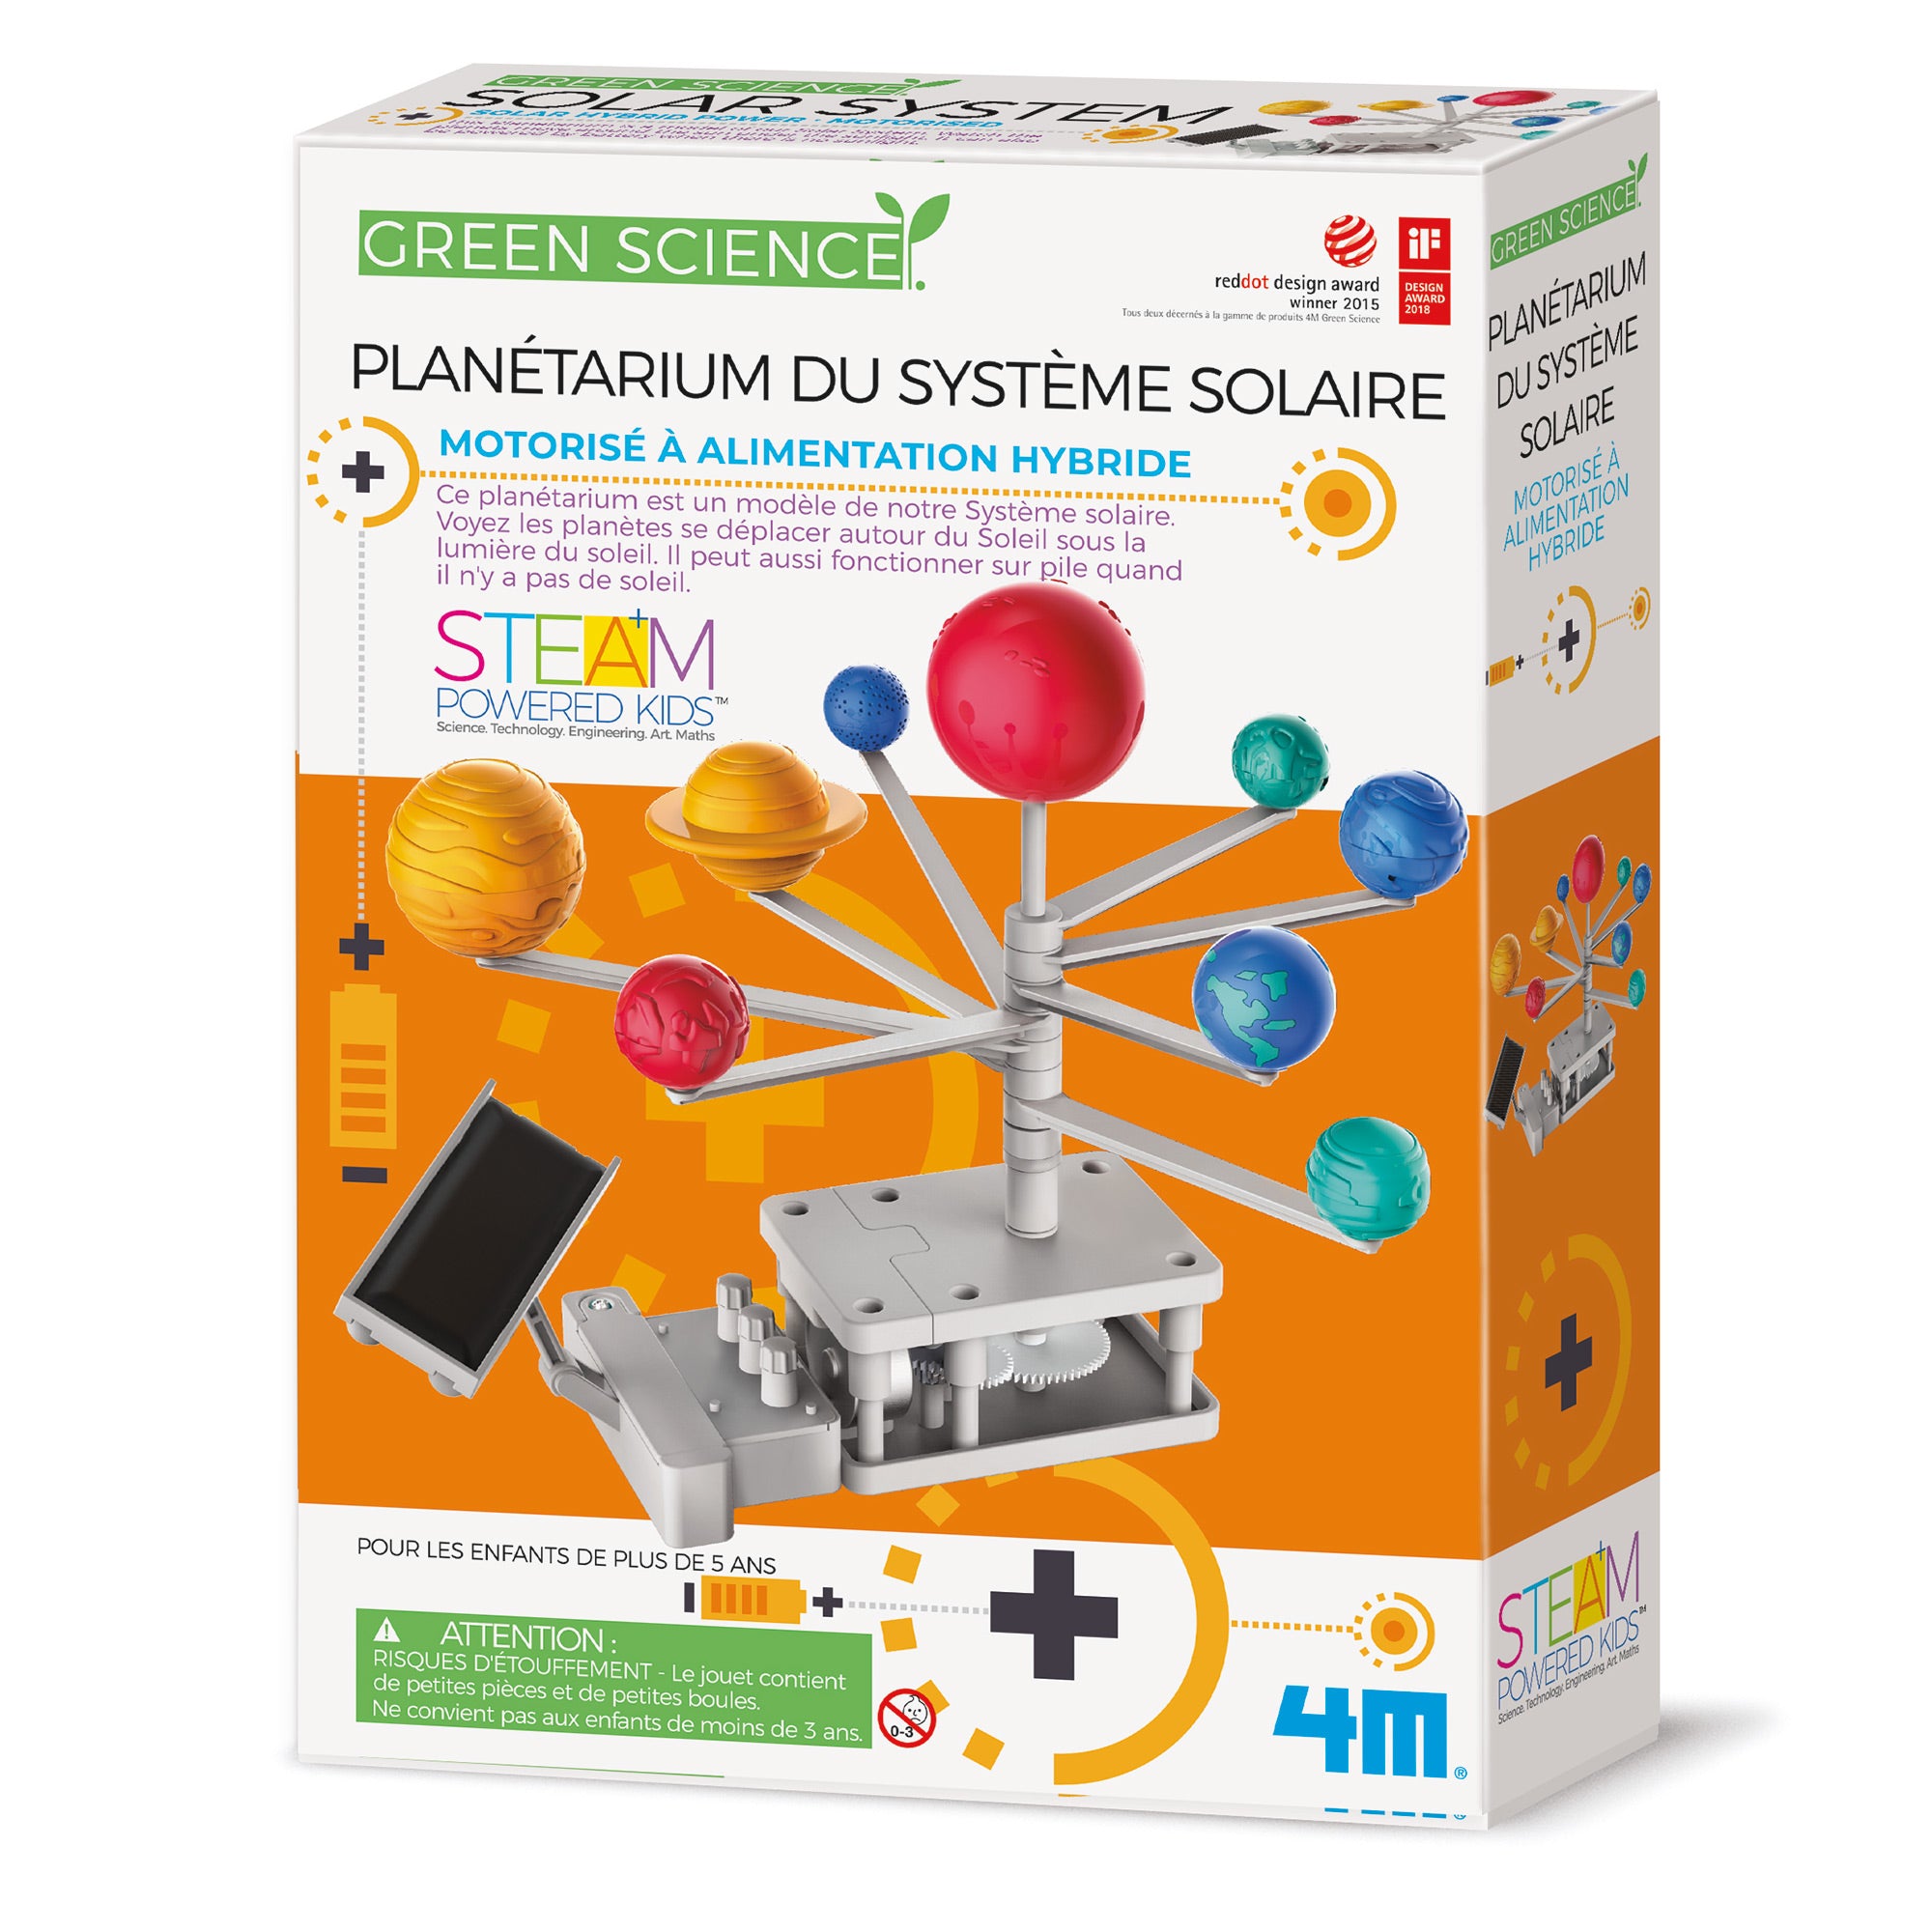 Sciences : Le système solaire 